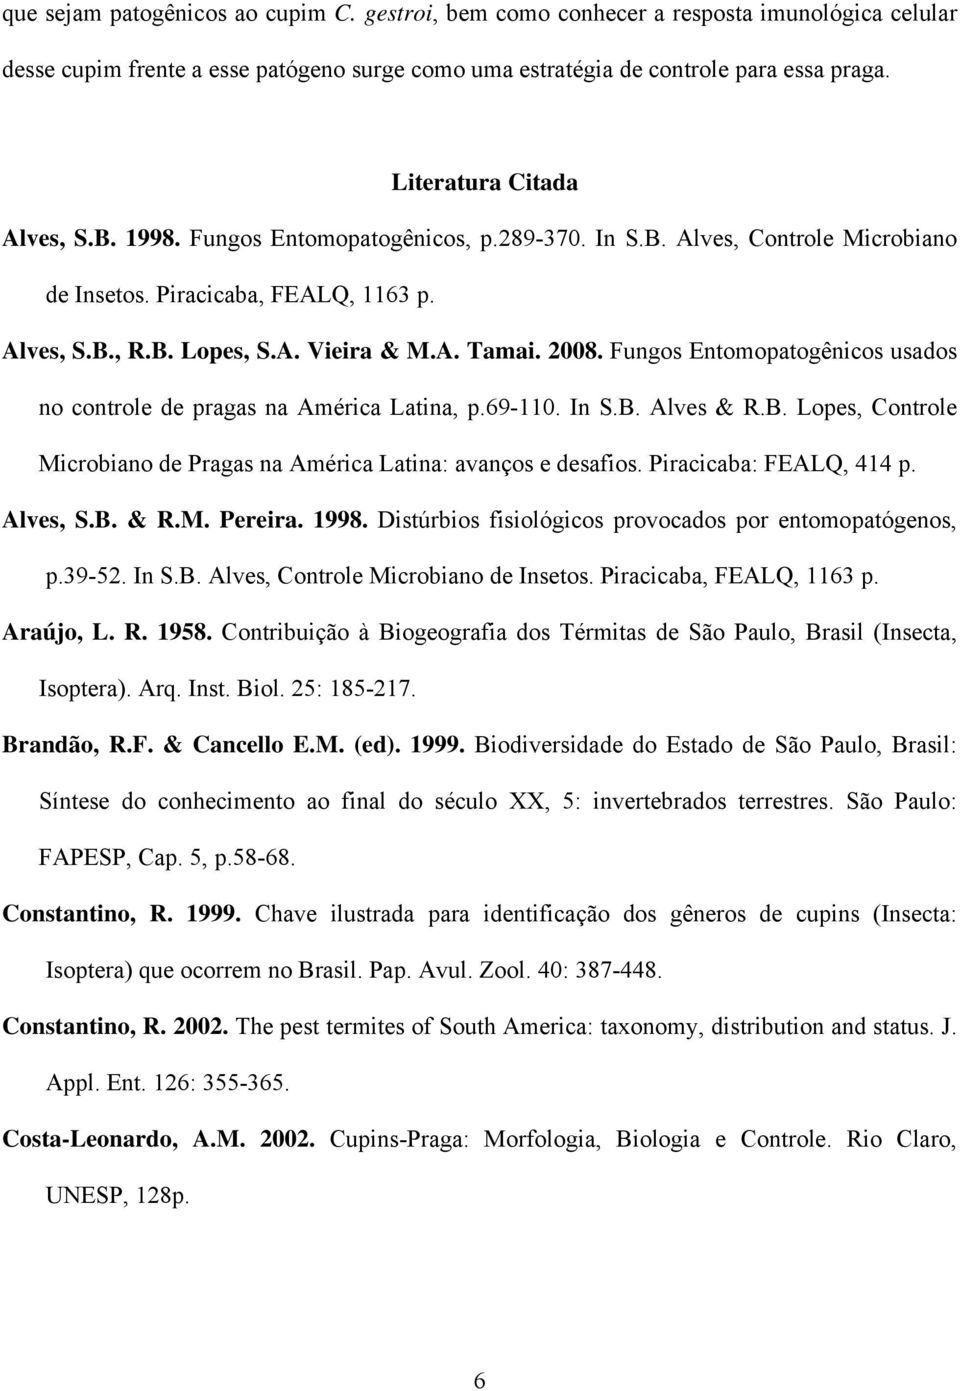 2008. Fungos Entomopatogênicos usados no controle de pragas na América Latina, p.69-110. In S.B. Alves & R.B. Lopes, Controle Microbiano de Pragas na América Latina: avanços e desafios.